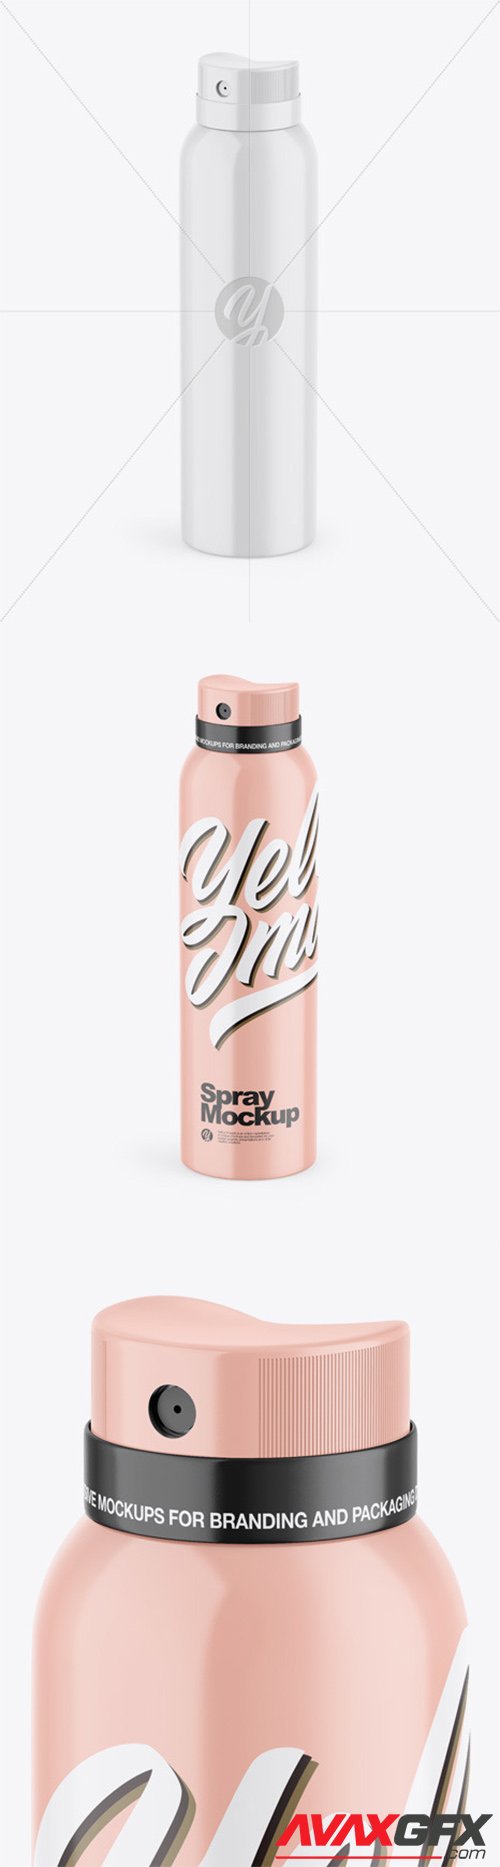 Glossy Aerosol Spray Bottle Mockup 55430